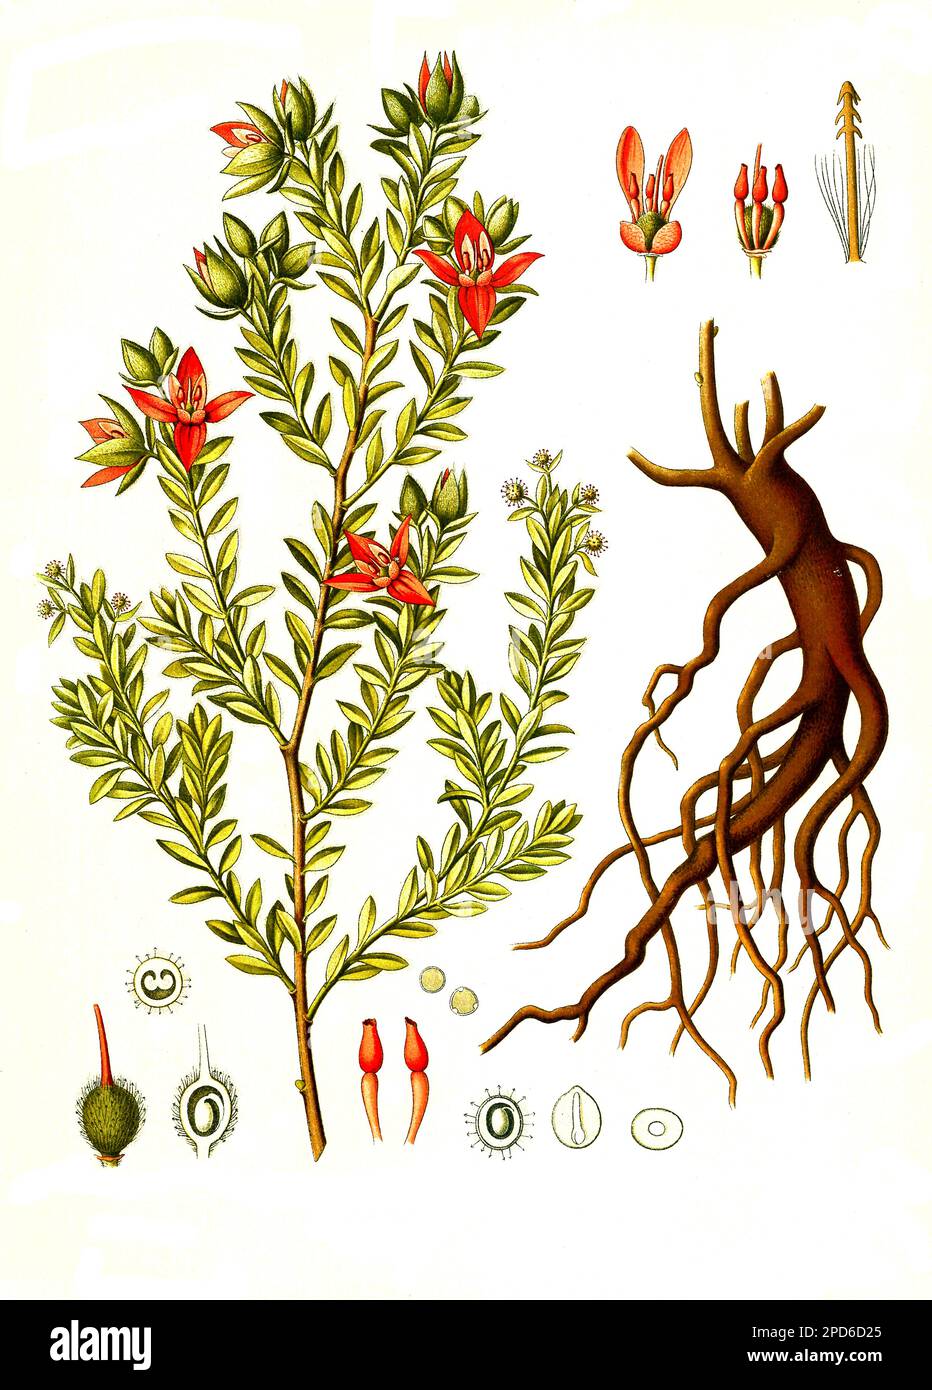 Heilpflanze, Ratanhia (Krameria lappacea), auch Rote Ratanhia, Peru- oder Payta-Ratanhia, Historisch, digital restaurierte Reproduktion von einer Vorlage aus dem 19. Jahrhundert, Stock Photo